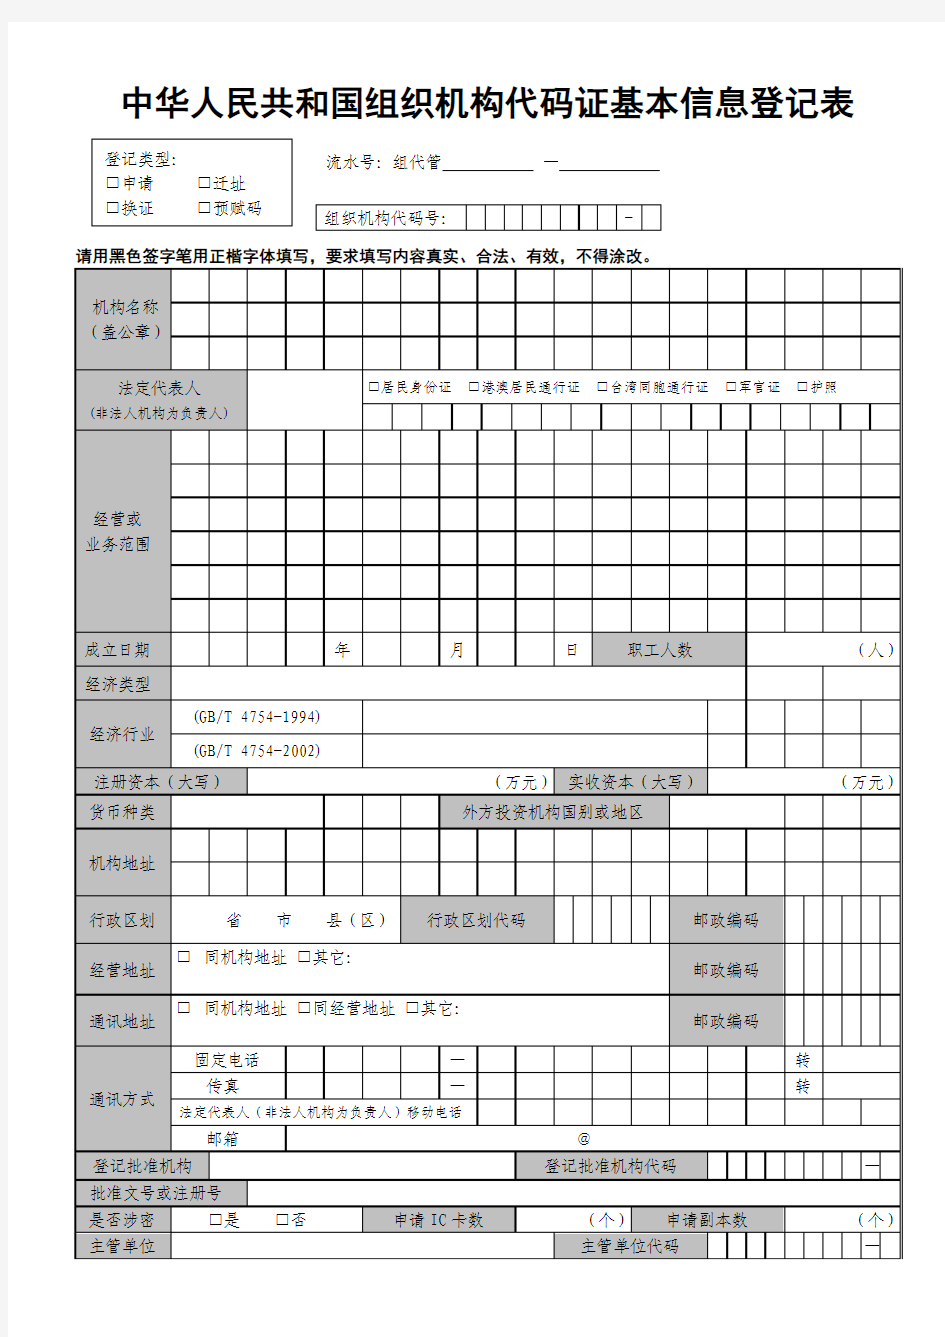 中华人民共和国组织机构代码证基本信息登记表